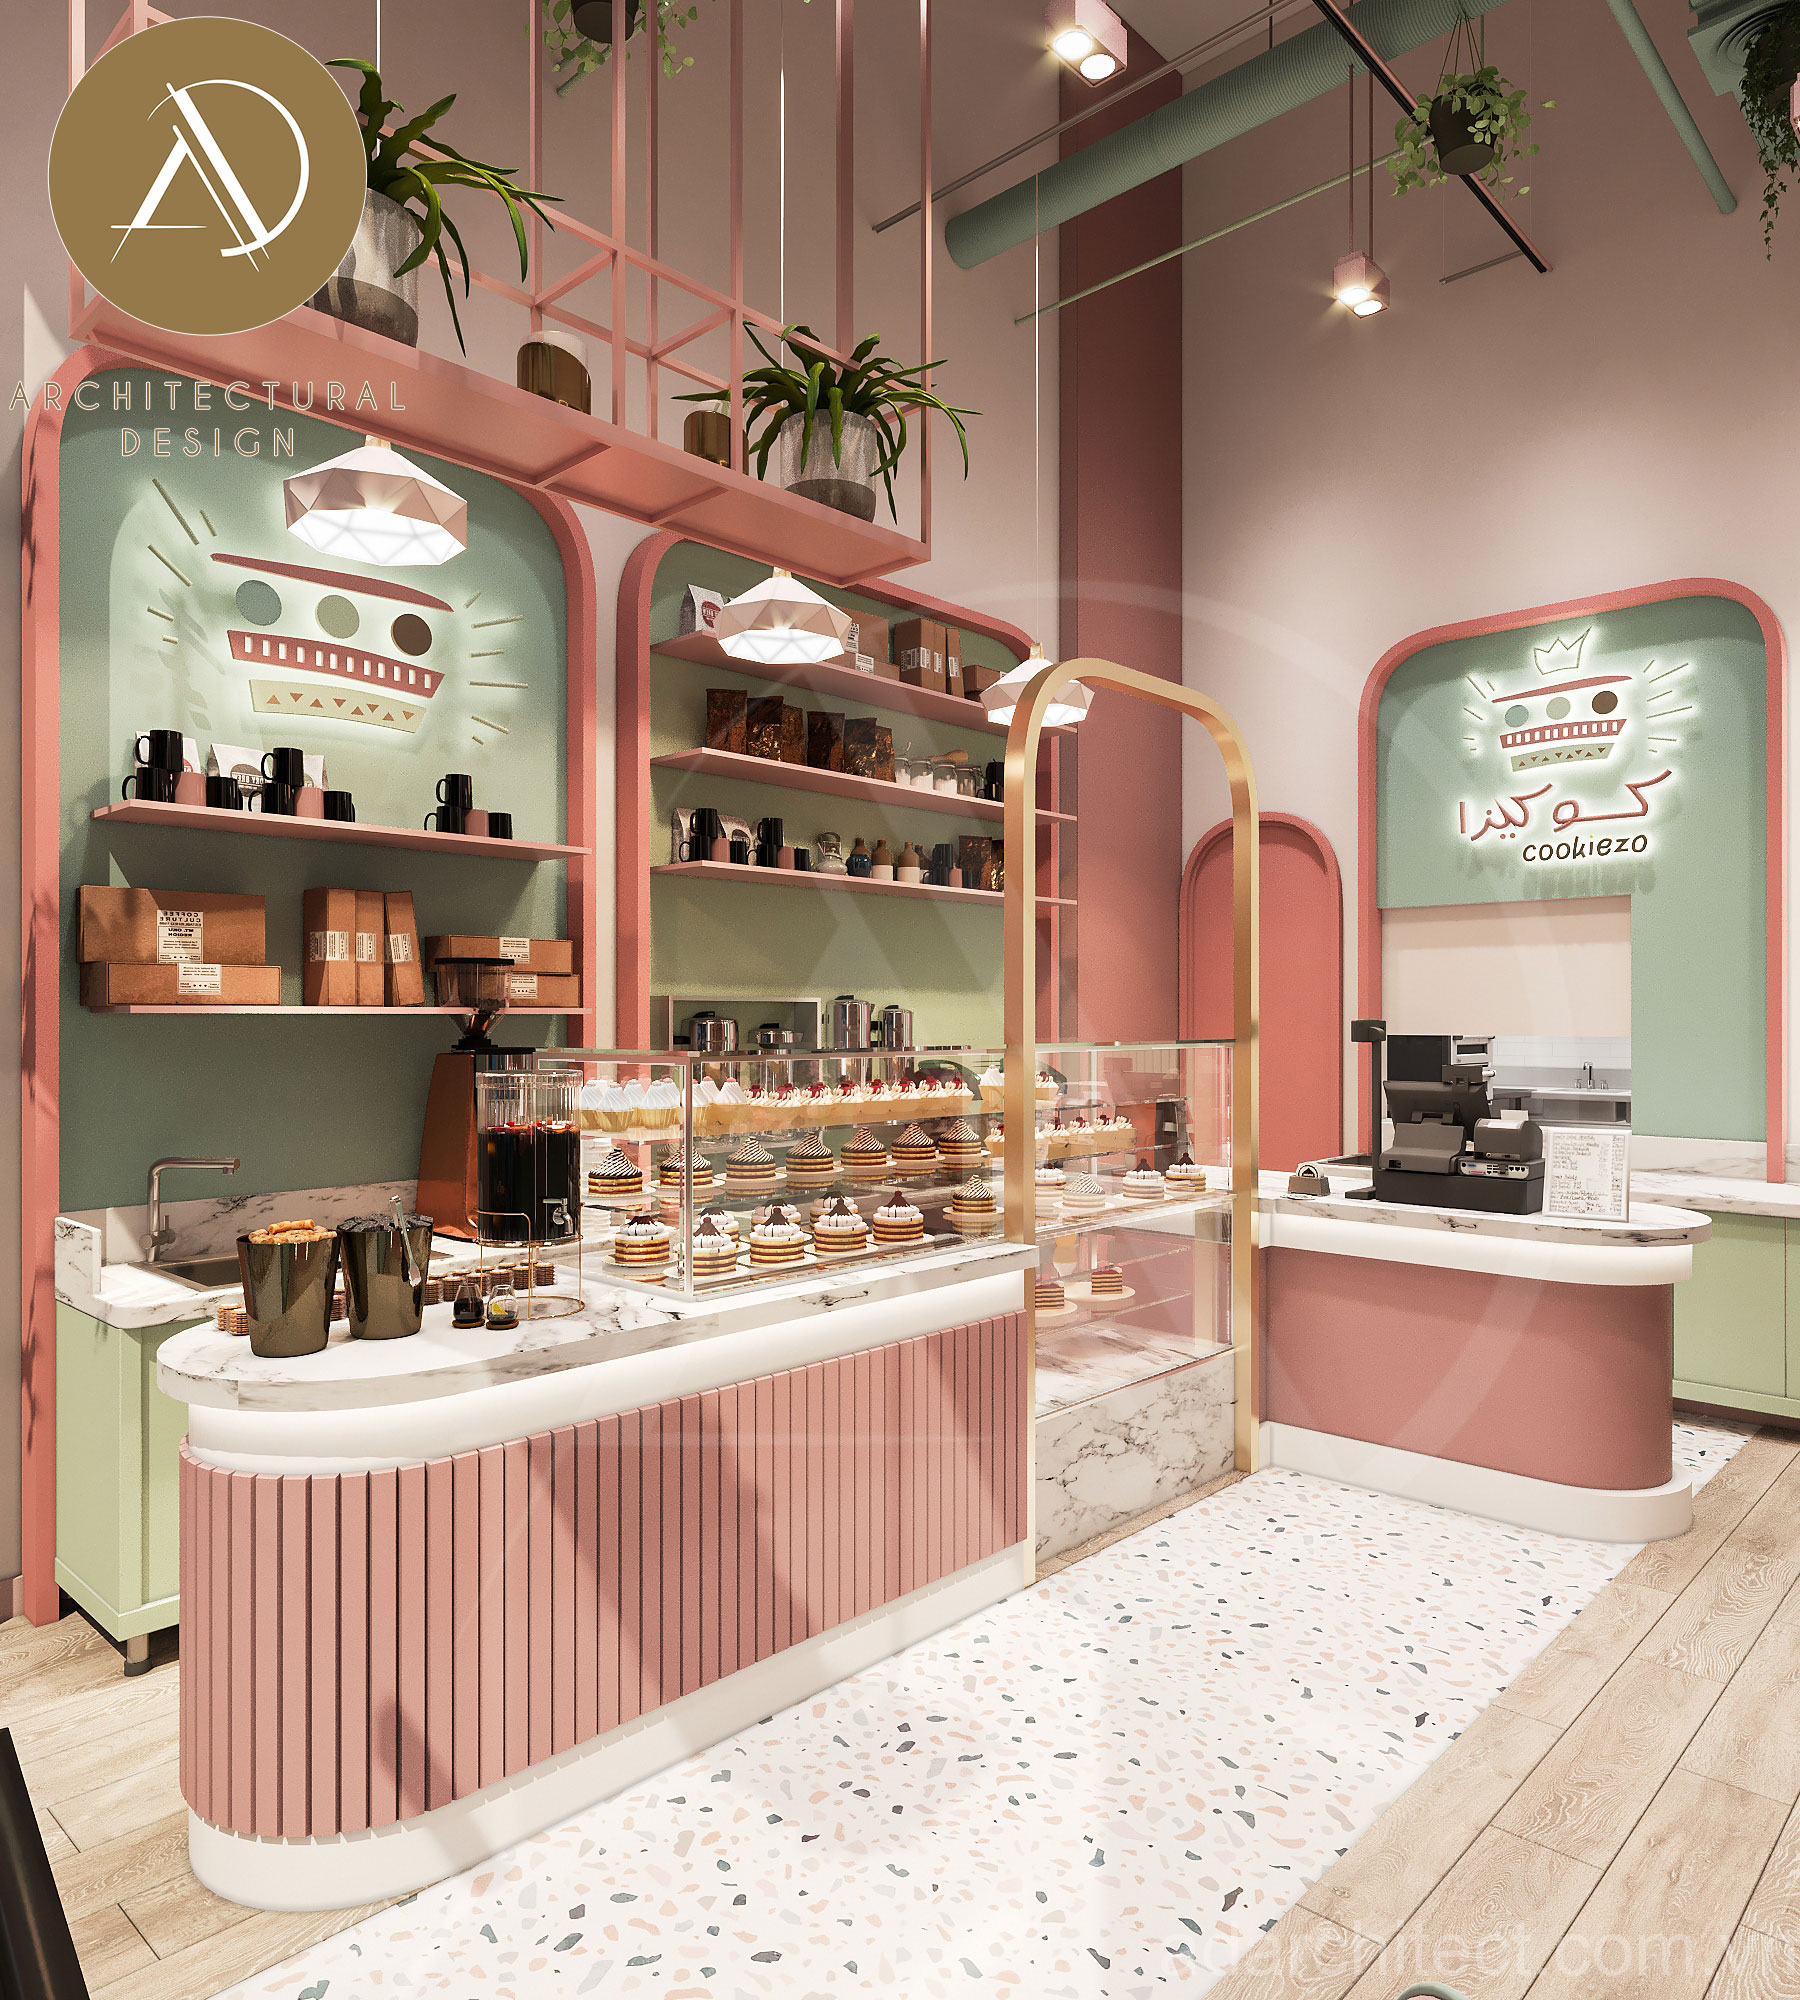 Tiệm bánh đẹp: thiết kế tiệm bánh ngọt mà hồng xinh xắn